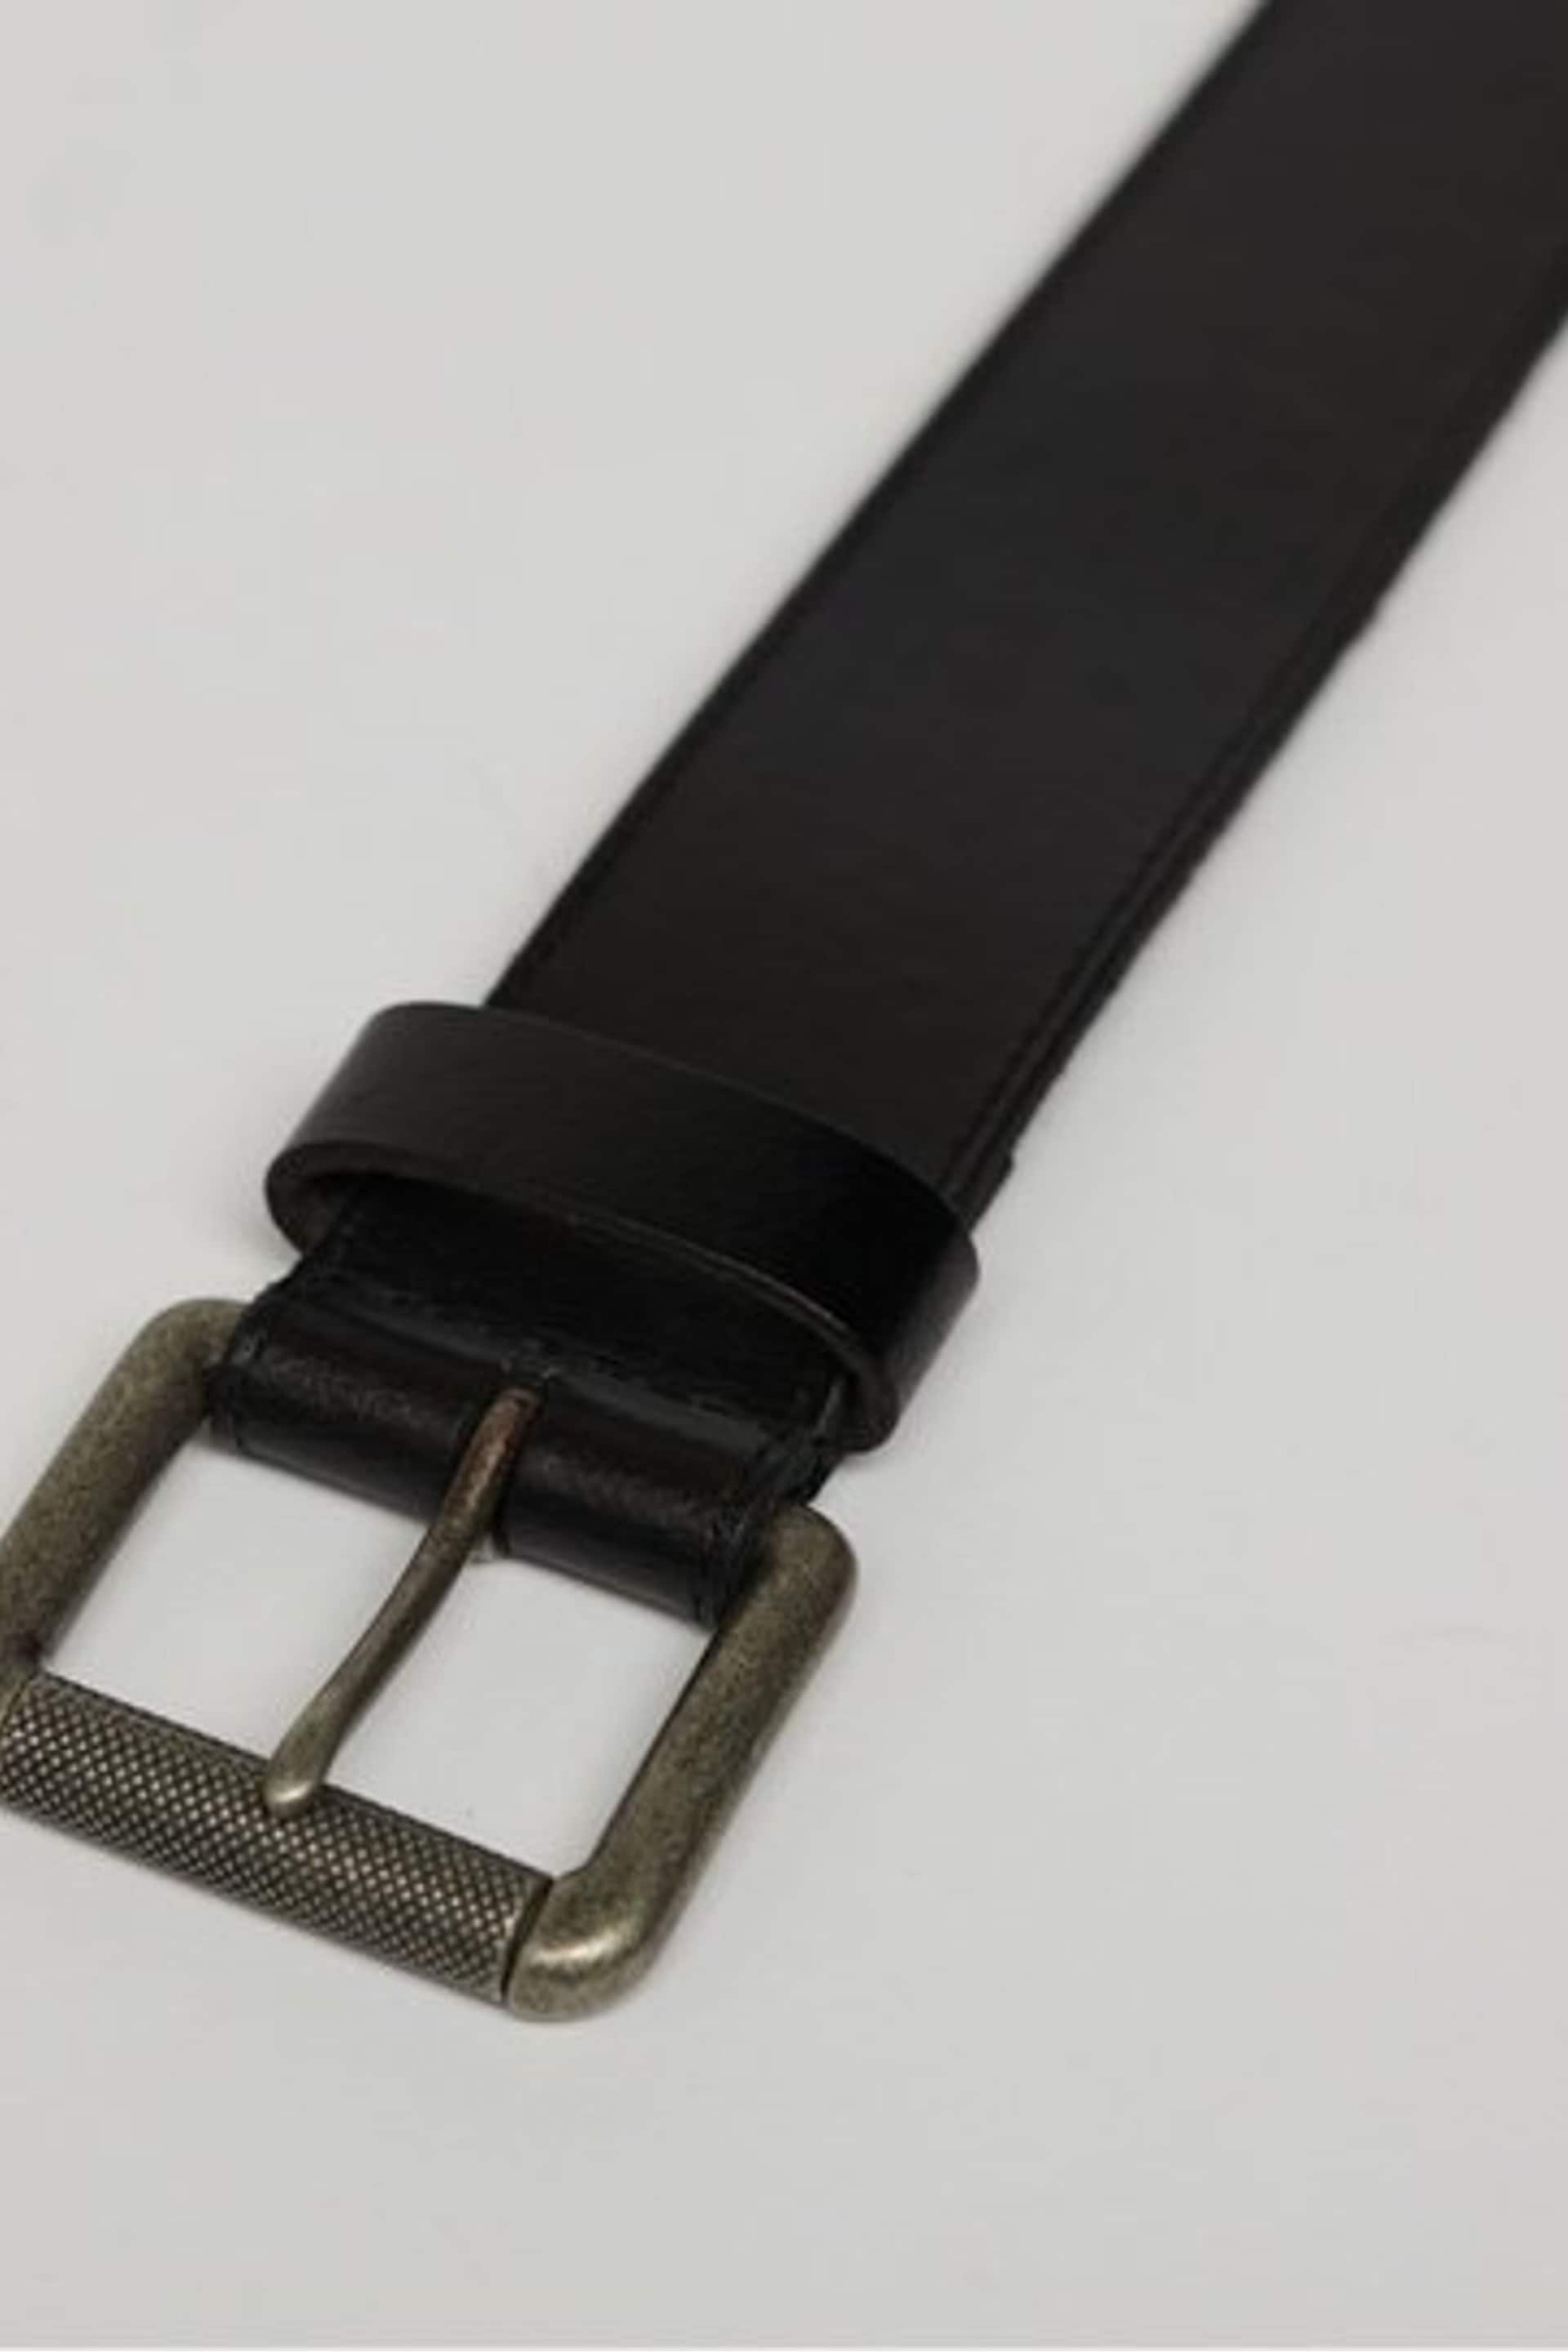 Superdry Black Chrome Vintage Branded Belt - Image 2 of 3